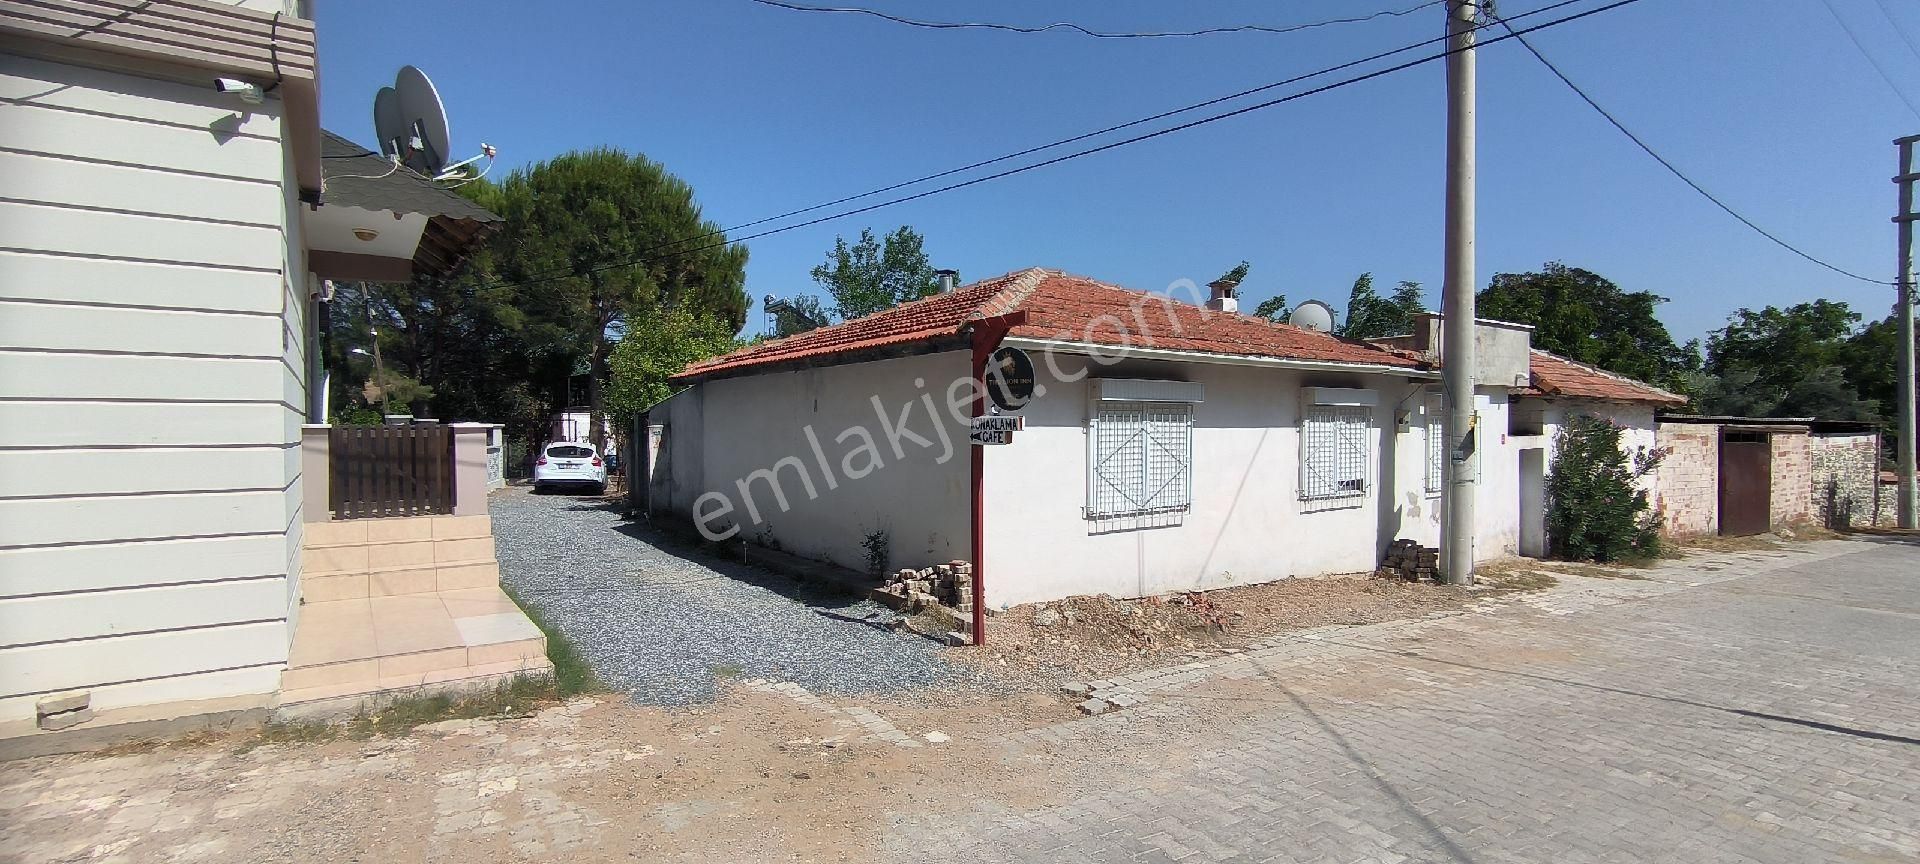 Edremit Kızılkeçili Satılık Müstakil Ev  kızıl keçili köyünde bahçeli müstakil ev